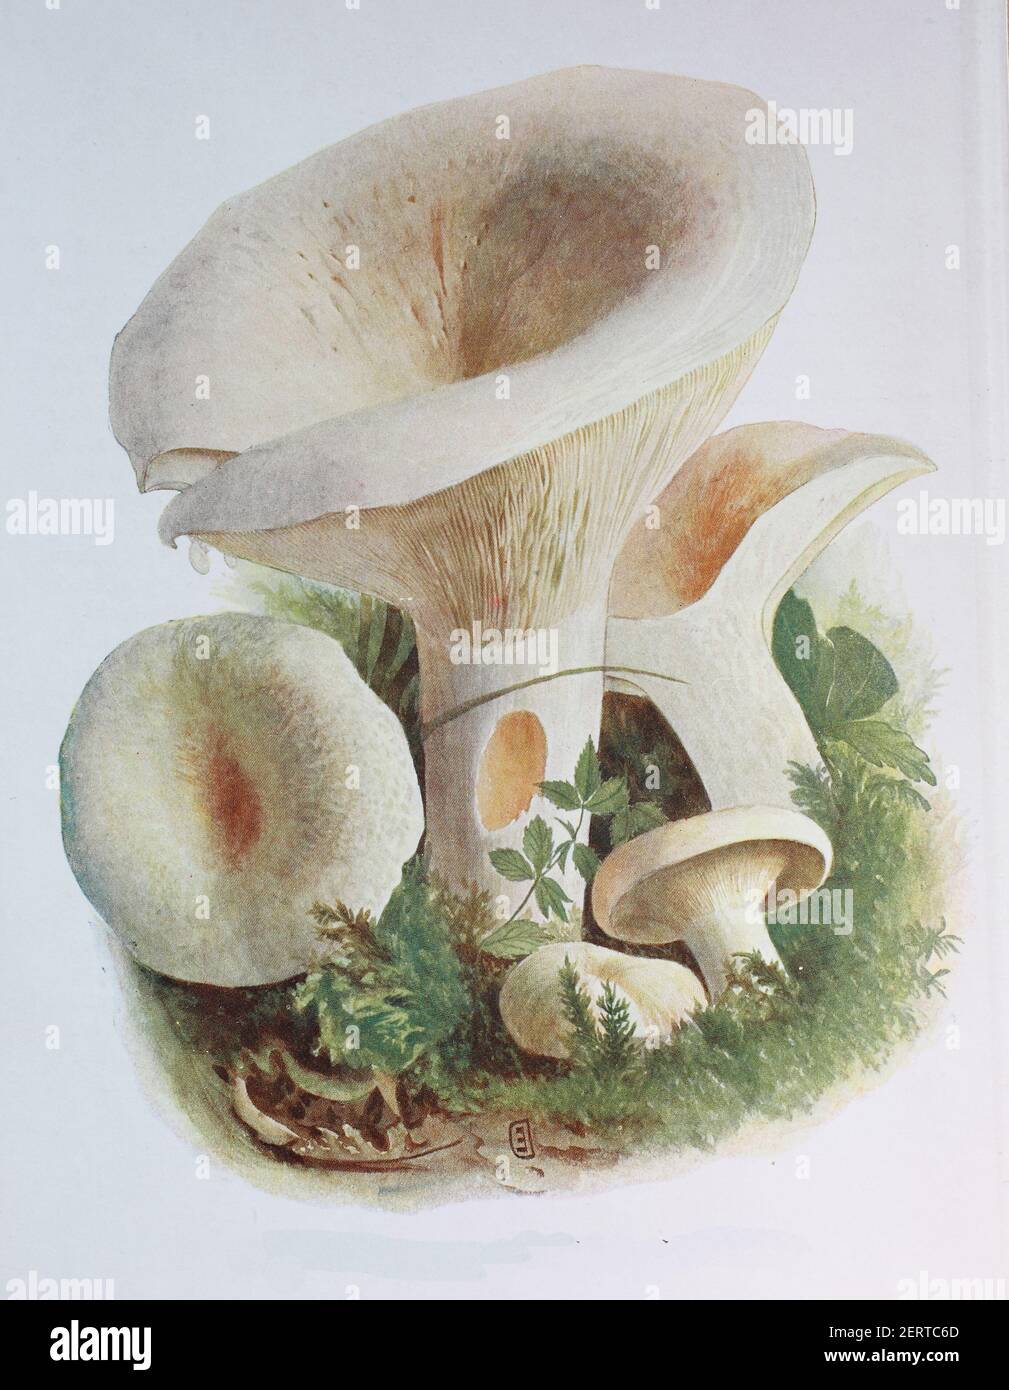 Lactifluus piperatus (sinonimo di Lactifluus piperatus), comunemente noto come cappuccio di latte pepperoso, è un fungo basidiomicete semi-commestibile del genere Lactifluus, riproduzione digitale di un'immagine di Emil Doerstling (1859-1940) Foto Stock